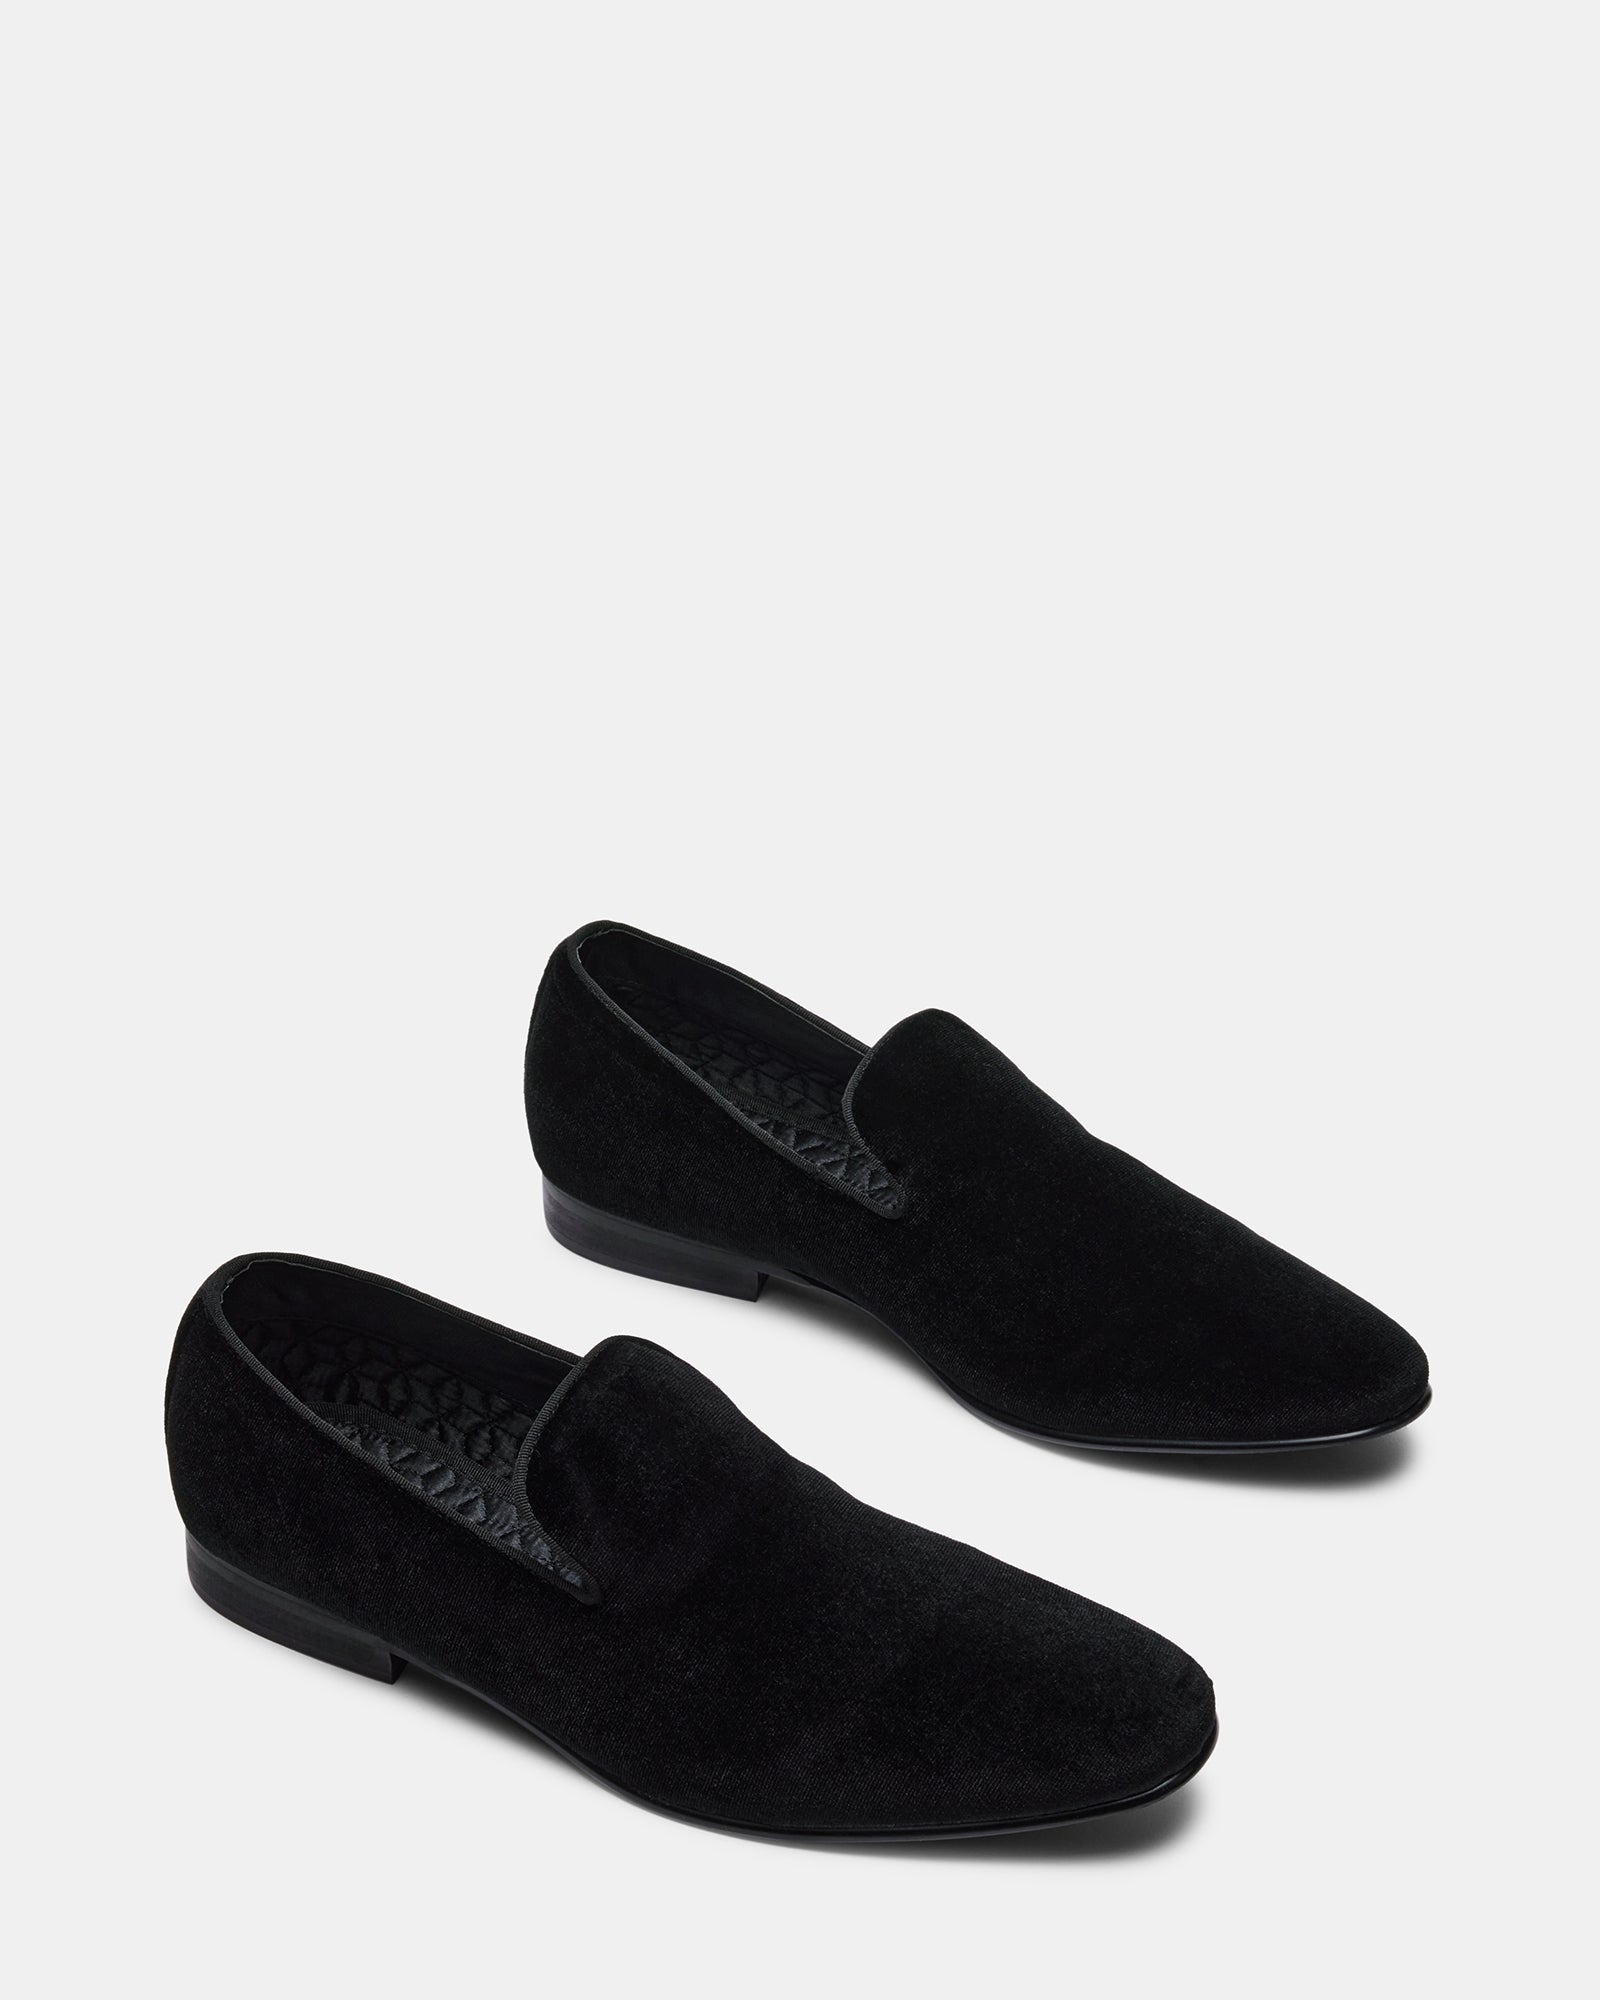 LAIGHT Black Velvet Dress Shoes | Men's Velvet Dress Shoes In Black ...